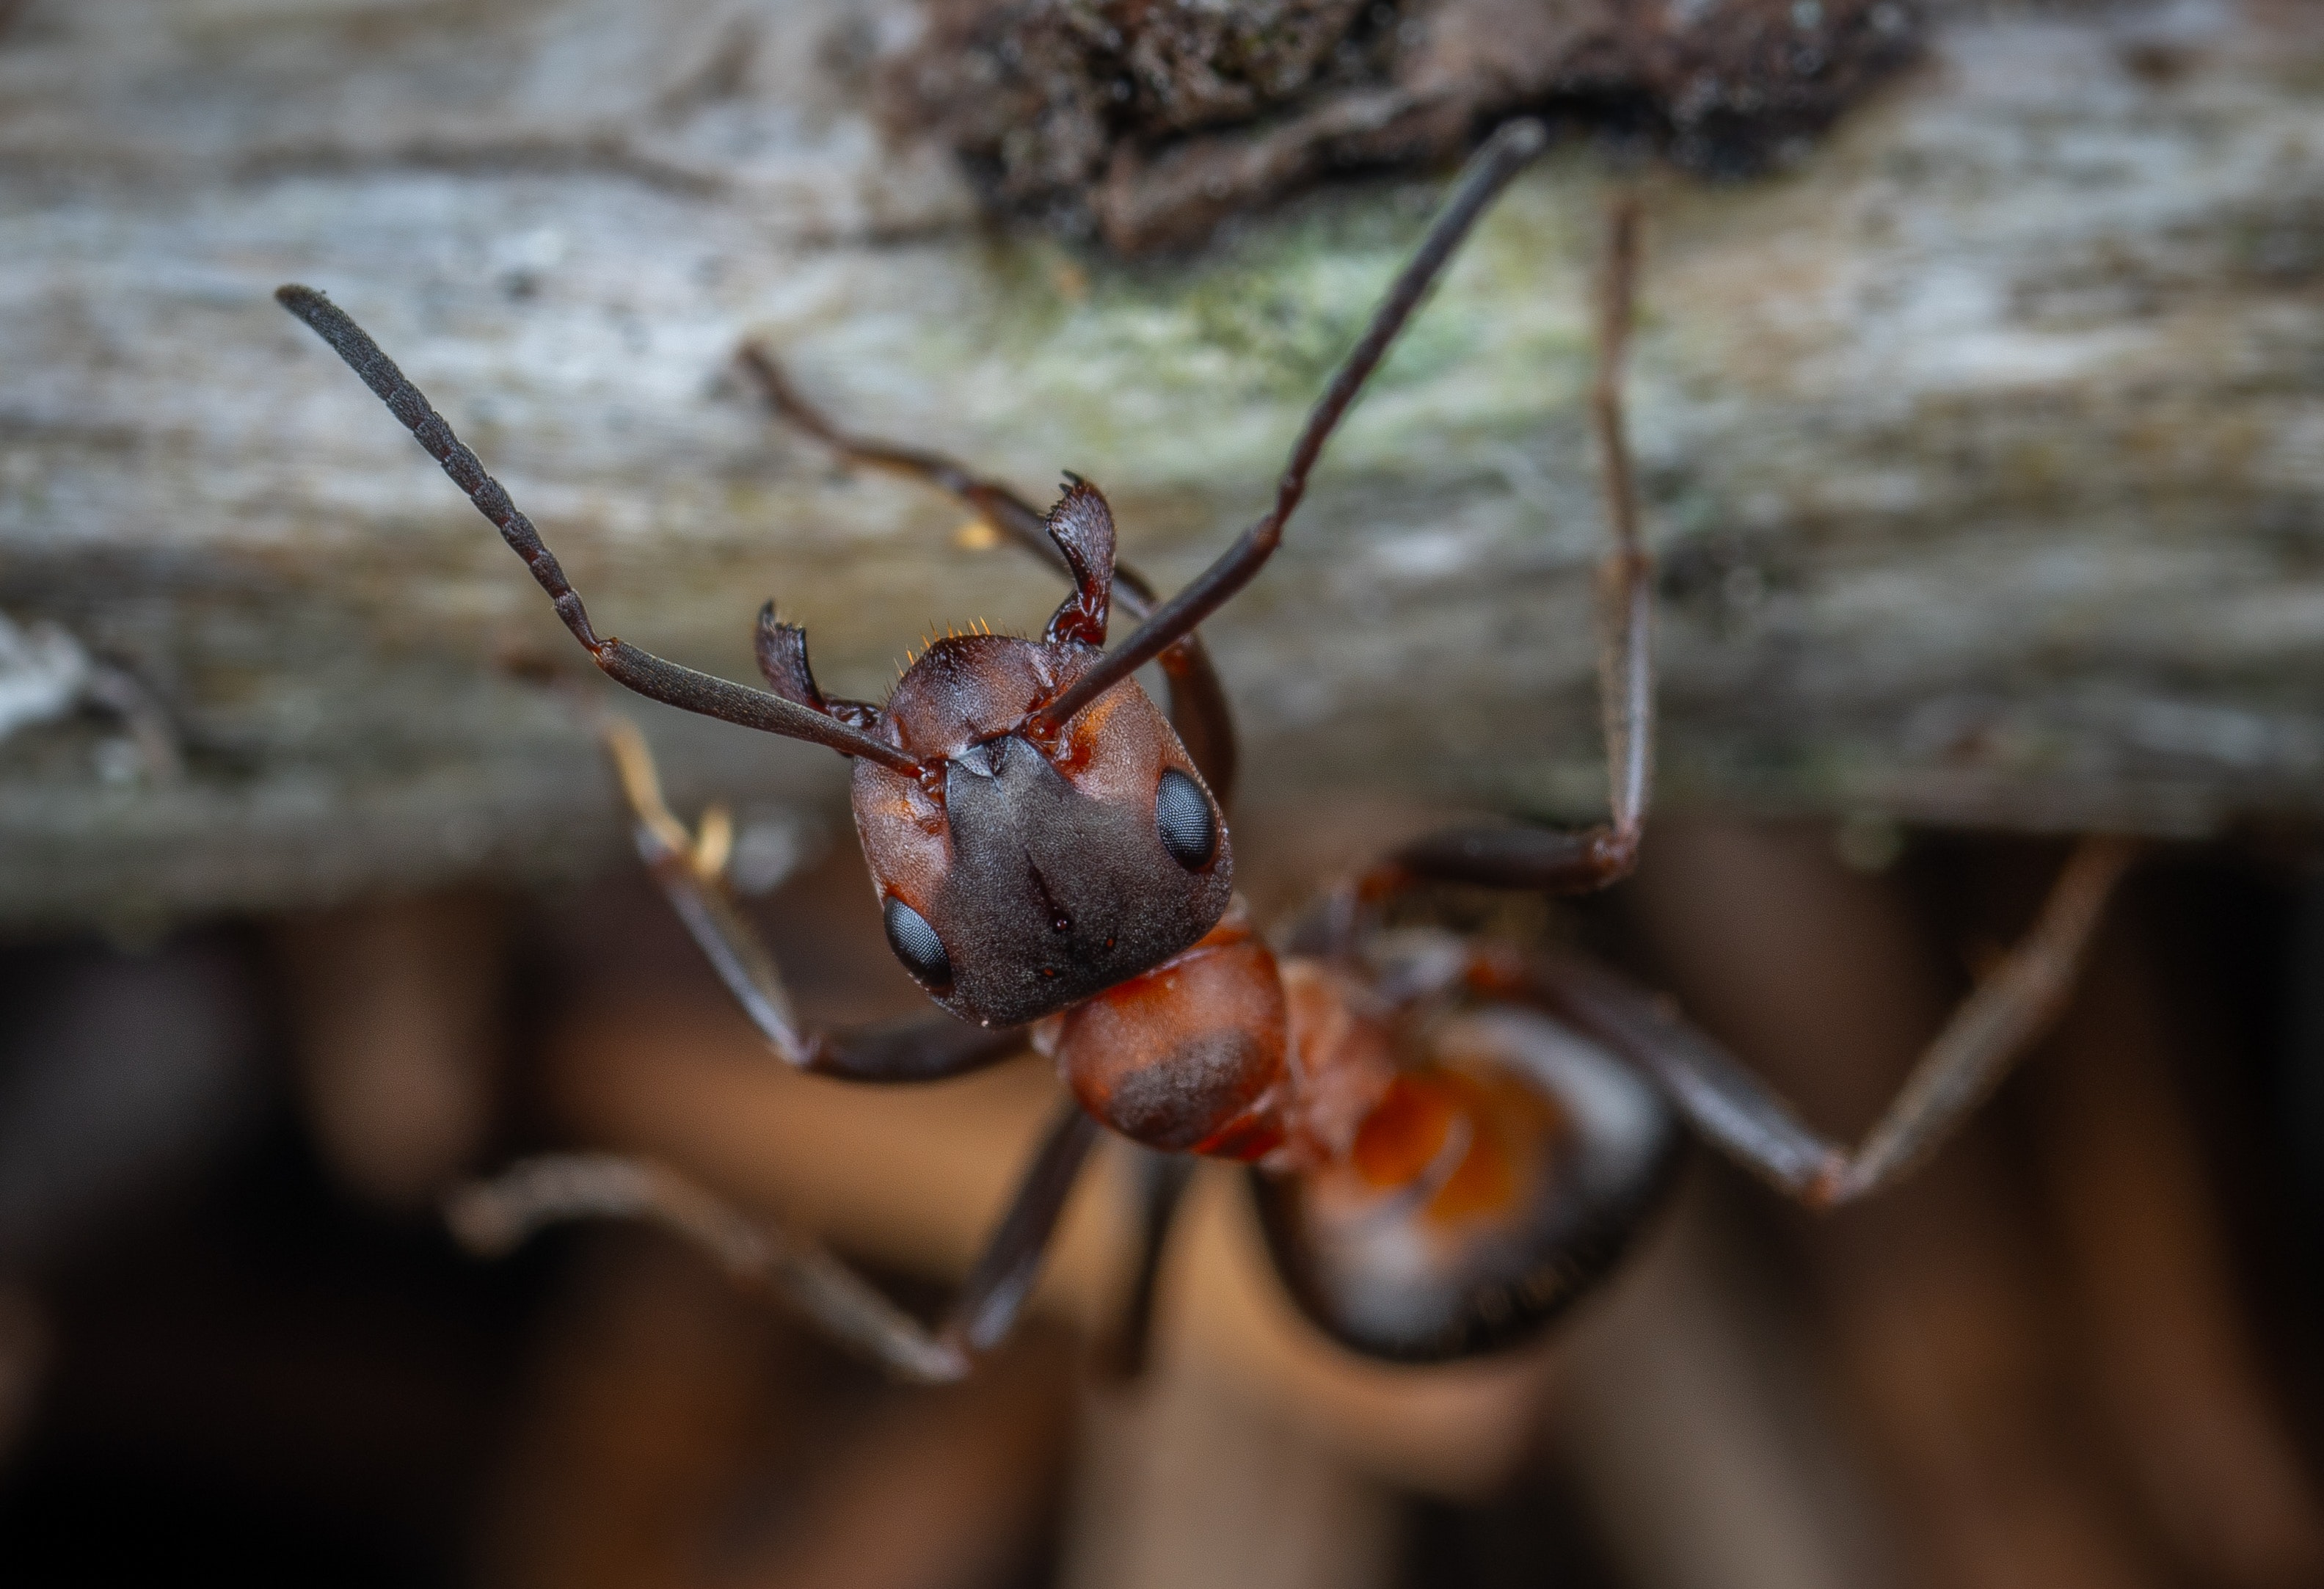 Anti fourmis prêt à l'emploi 750 ml : Répulsifs et anti-nuisibles